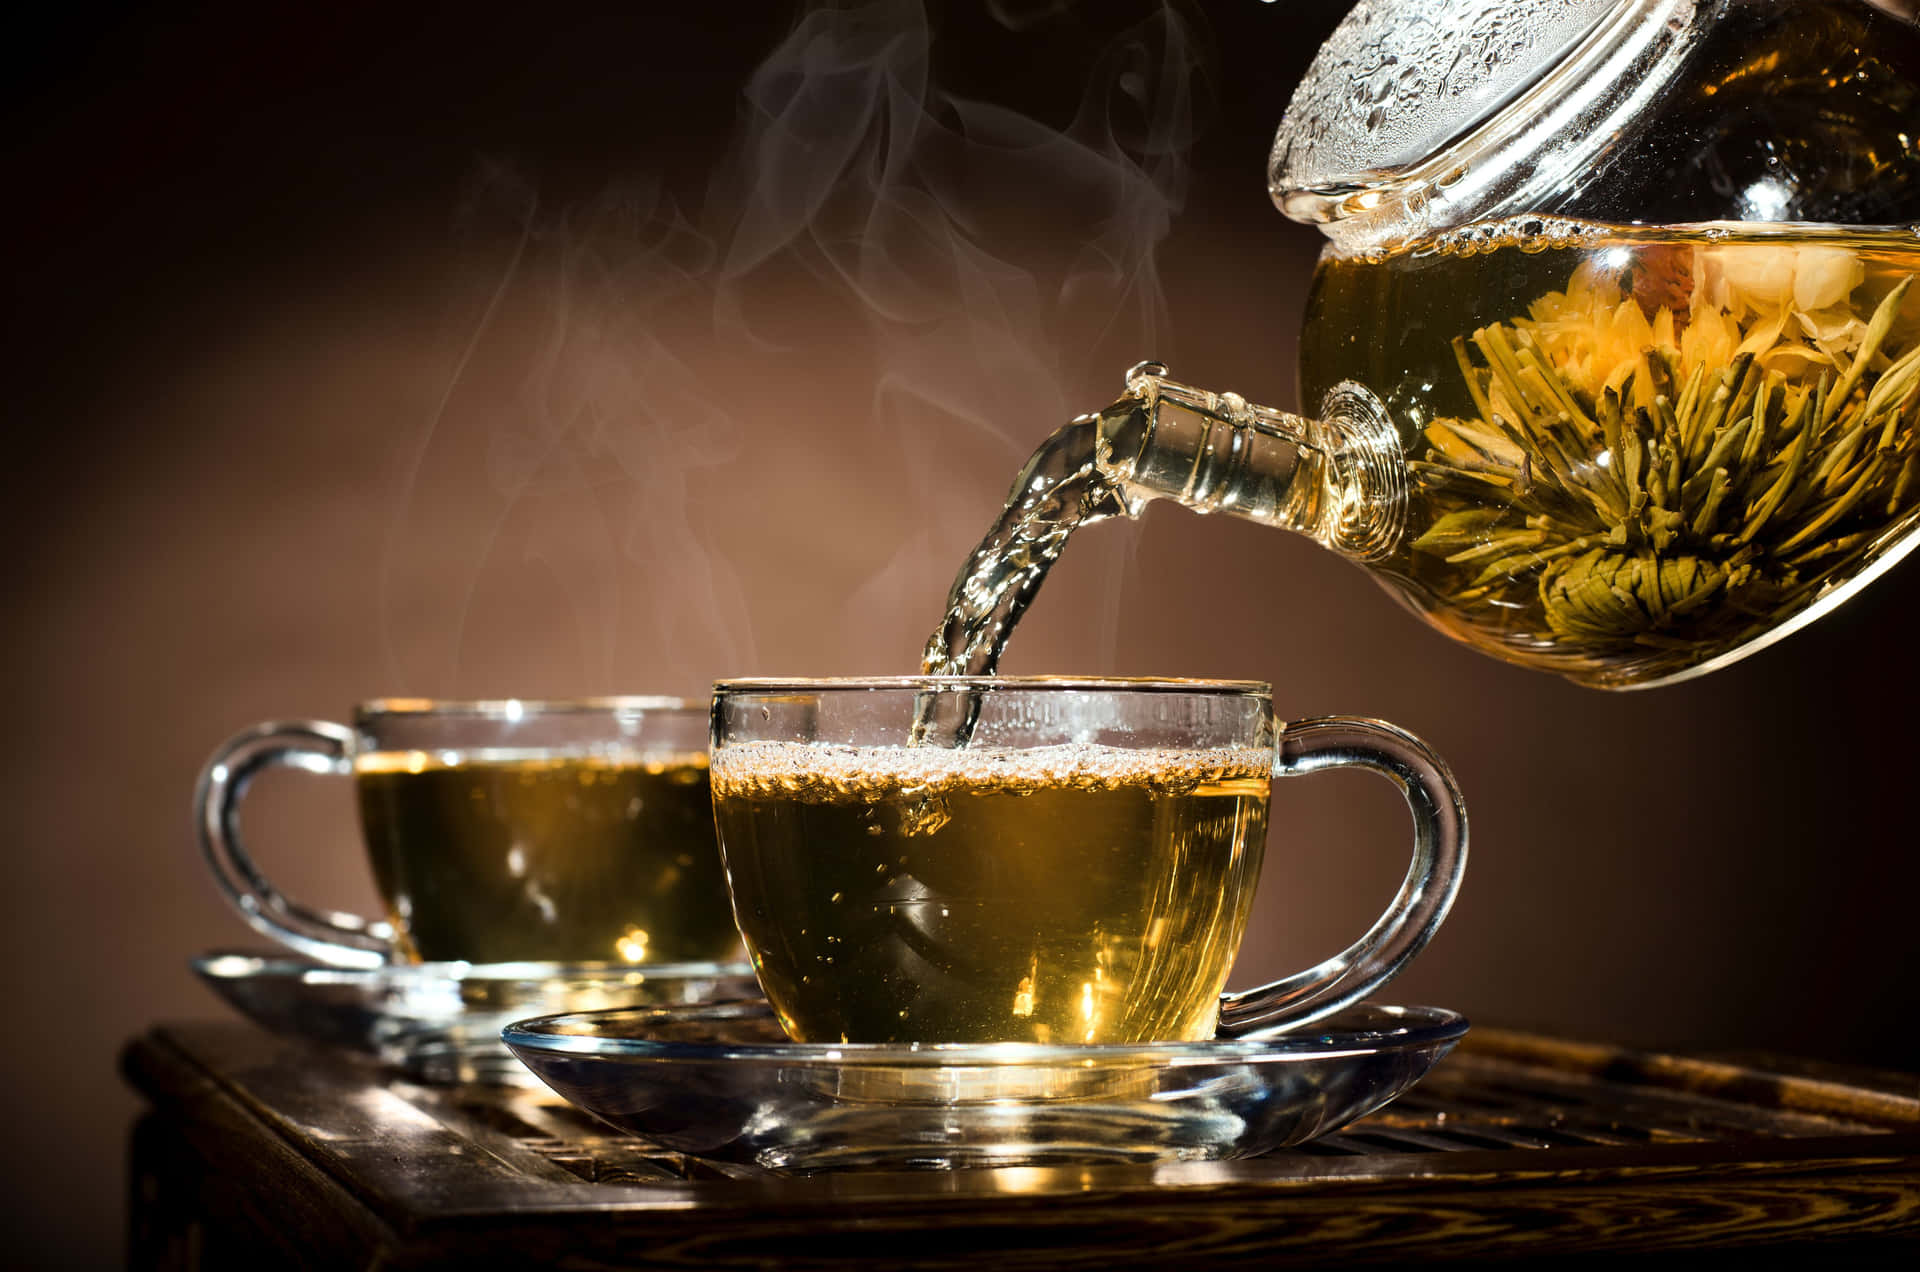 Genießensie Das Ruhige Ritual, Eine Tasse Tee Zu Trinken.